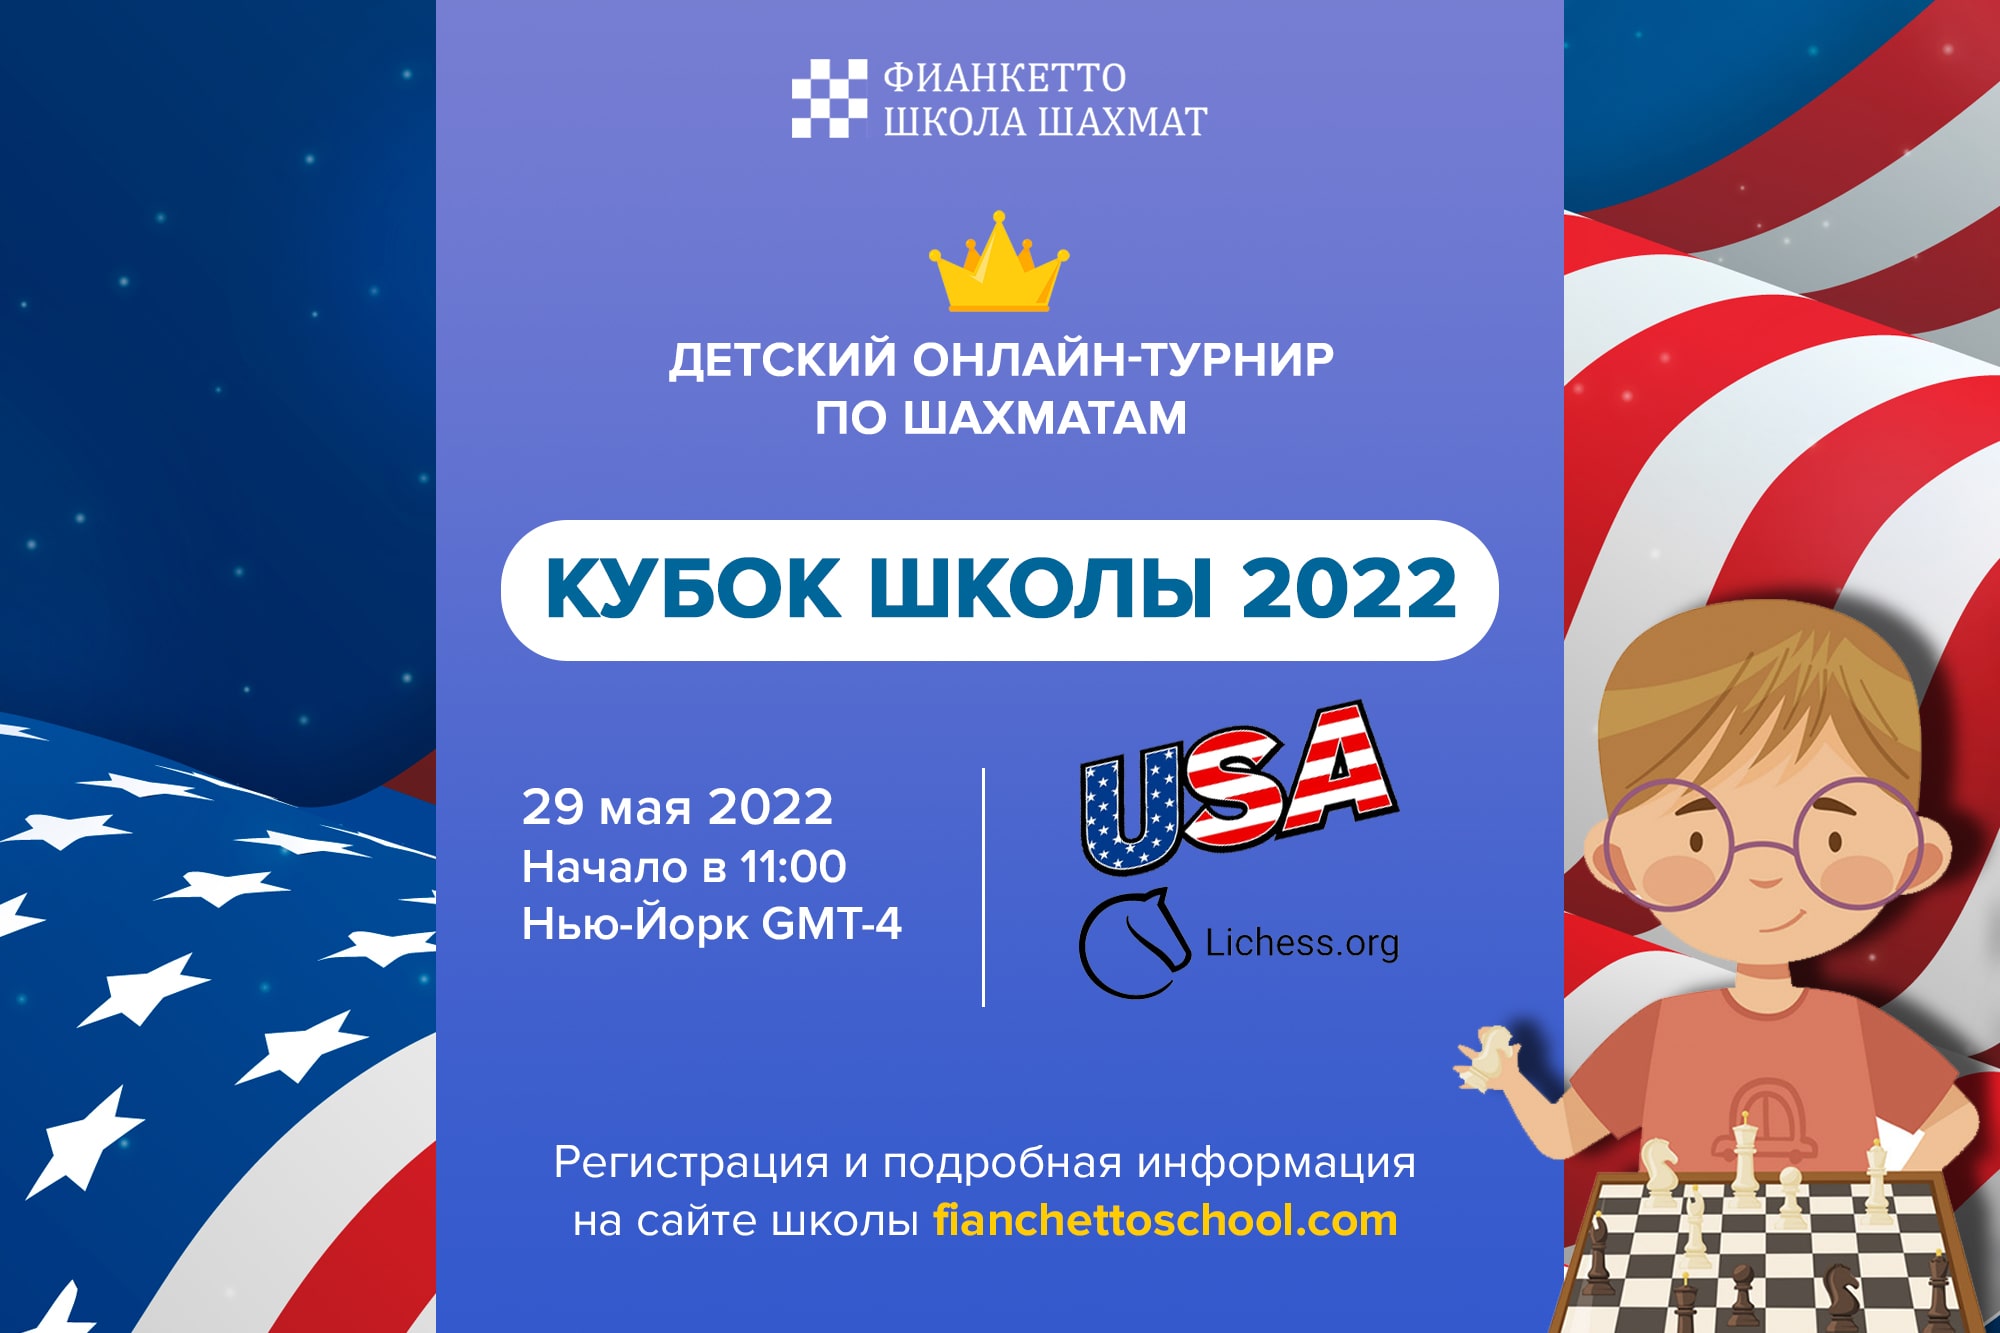 Кубок Фианкетто 2022 USA - онлайн-турнир по шахматам